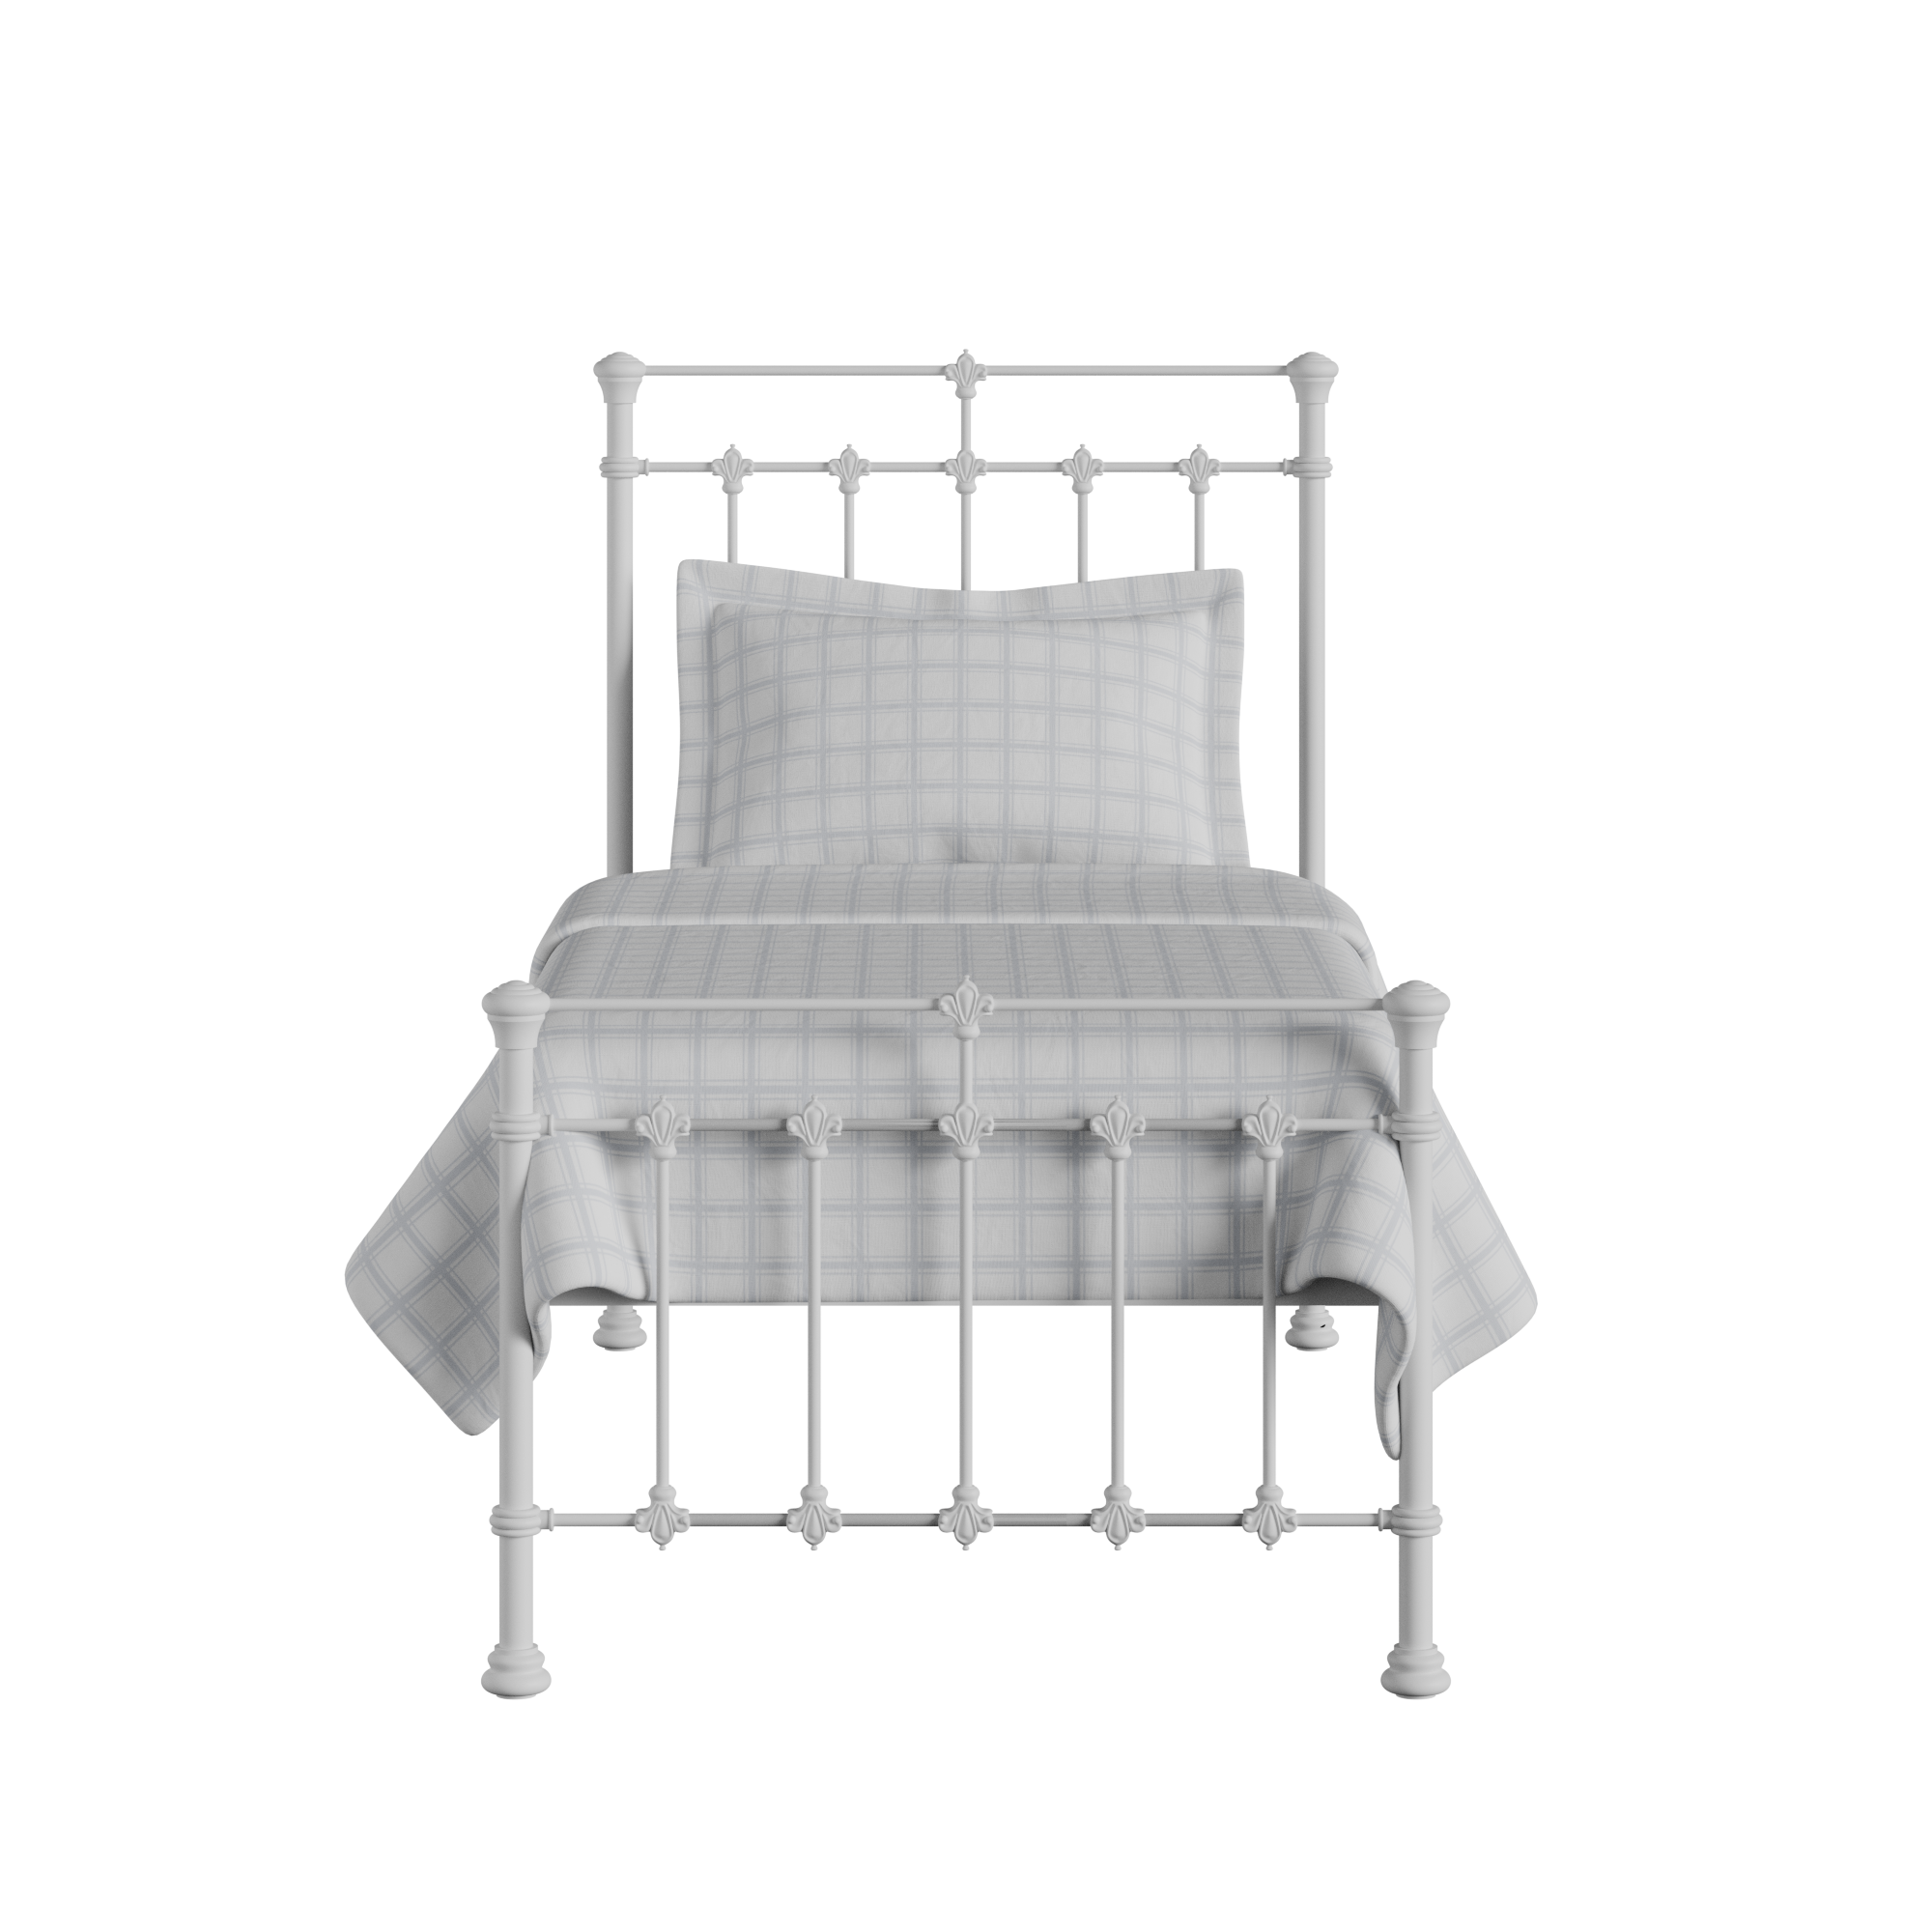 Edwardian cama individual de metal en blanco